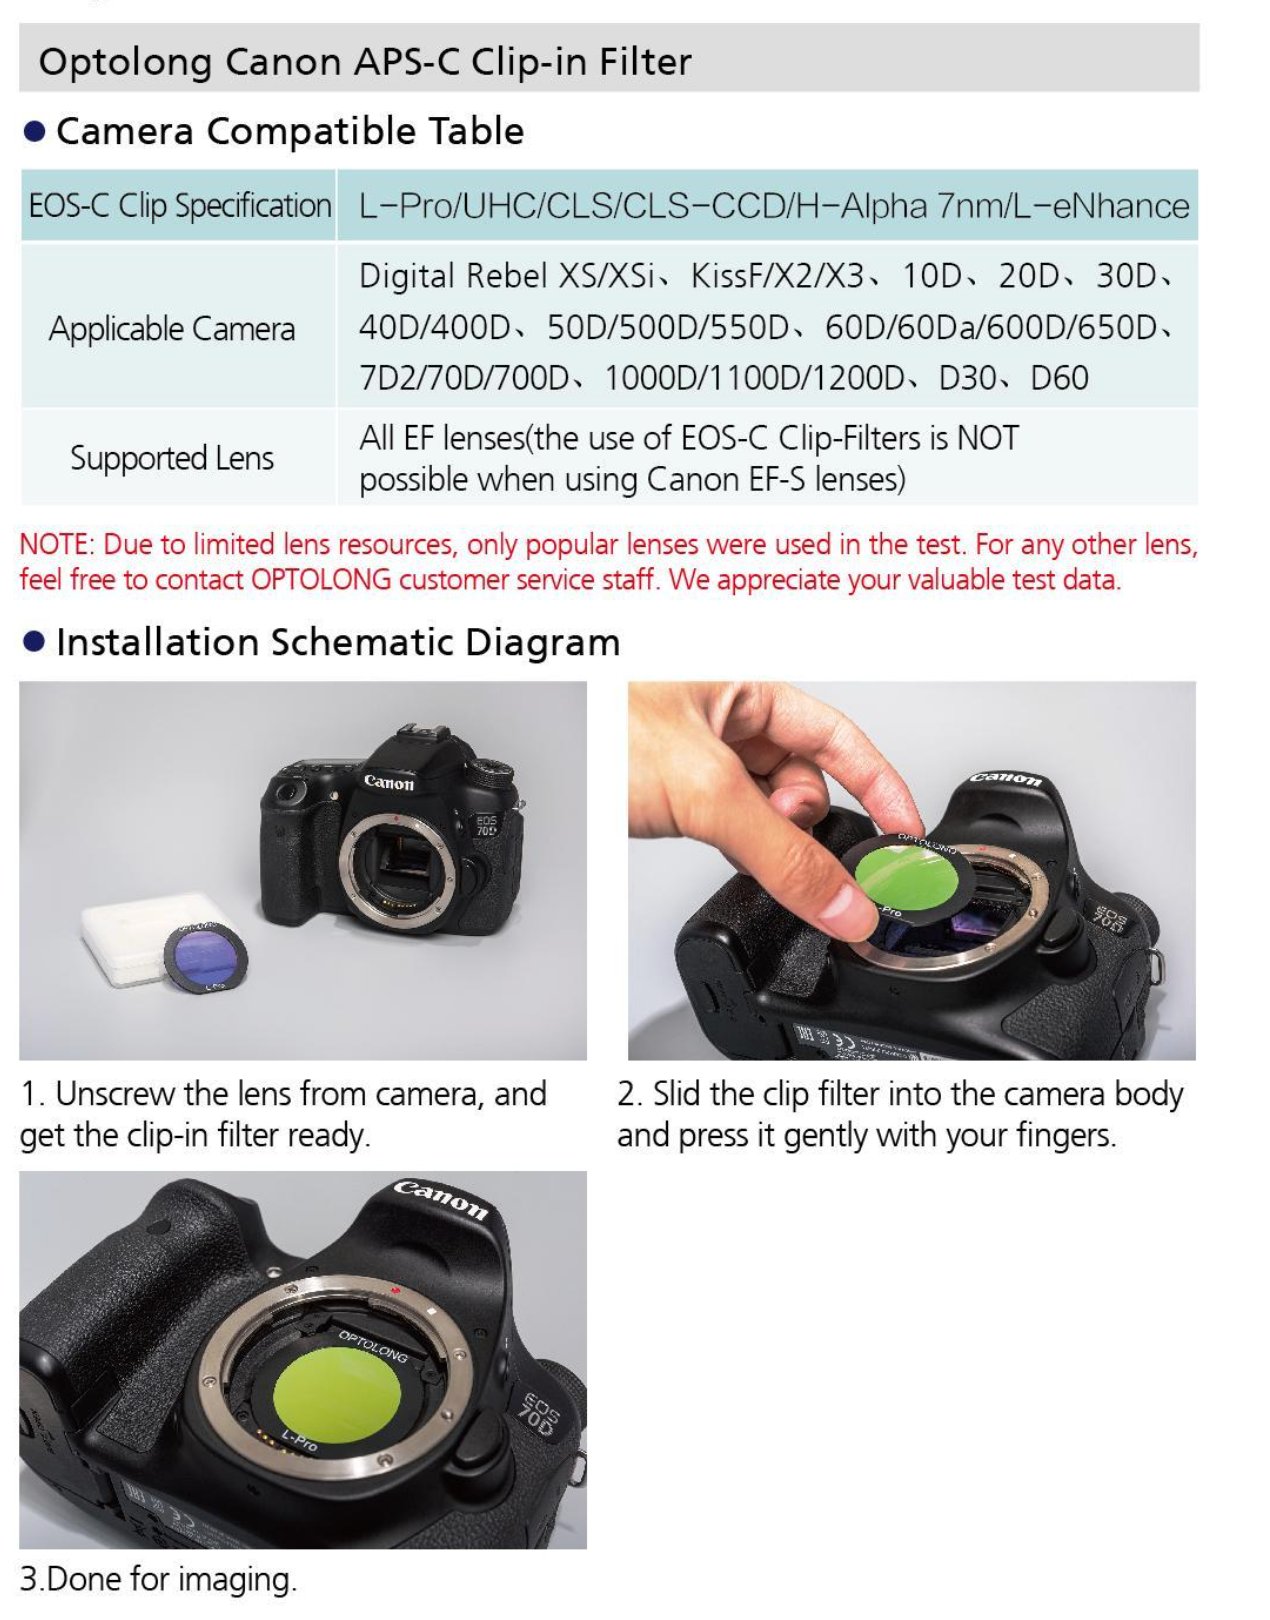 Comment installer le filtre clip Optolong dans les appareils photo Canon EOS APS-C